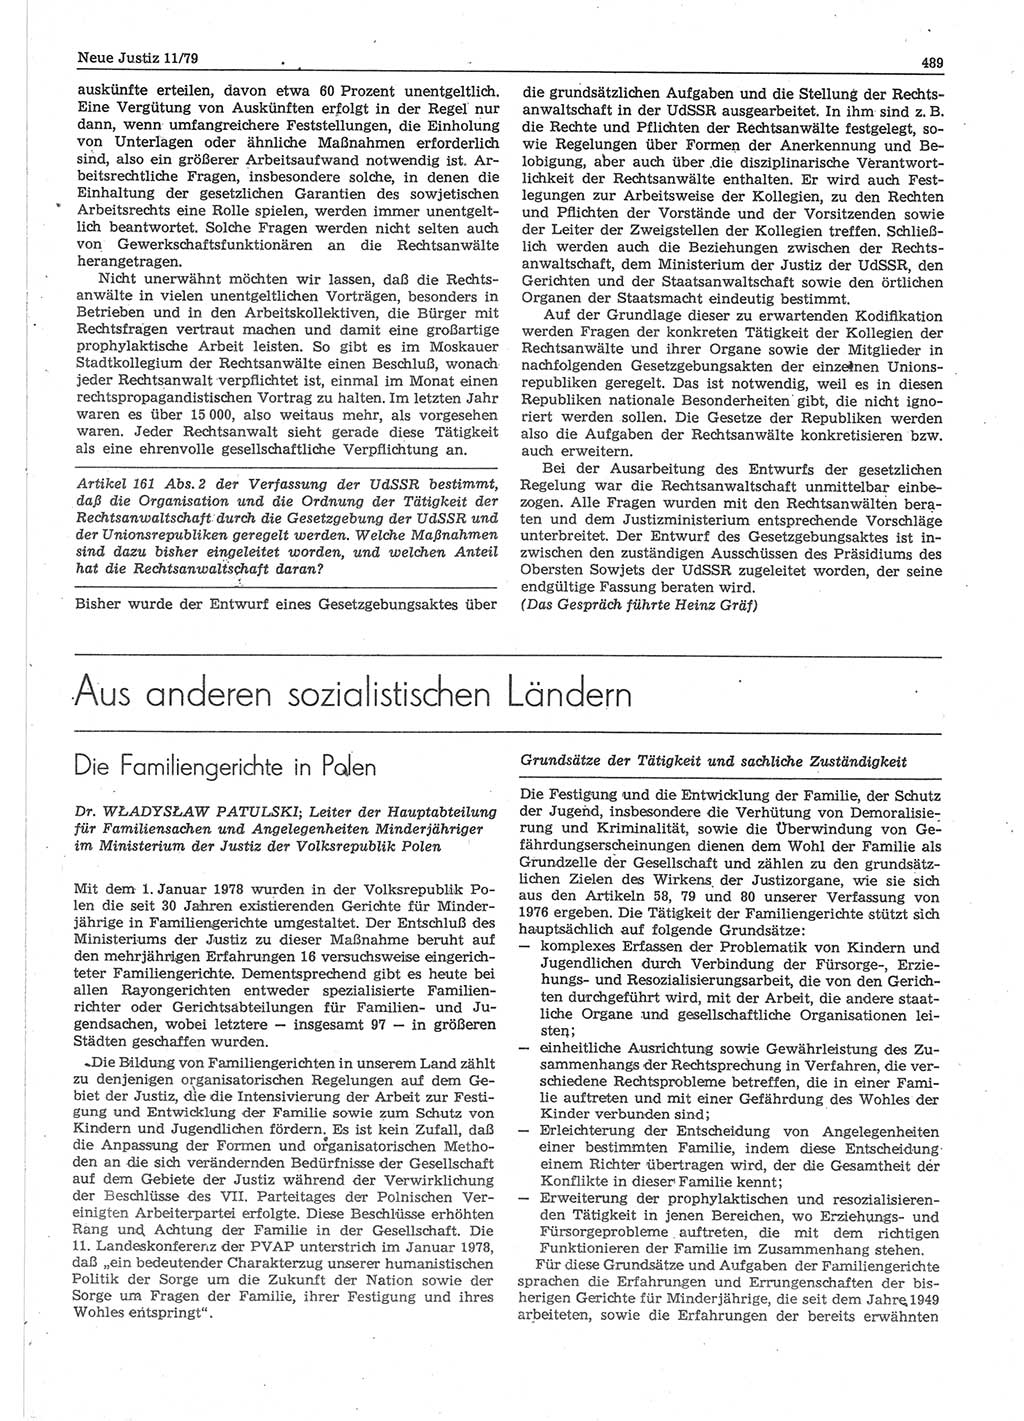 Neue Justiz (NJ), Zeitschrift für sozialistisches Recht und Gesetzlichkeit [Deutsche Demokratische Republik (DDR)], 33. Jahrgang 1979, Seite 489 (NJ DDR 1979, S. 489)